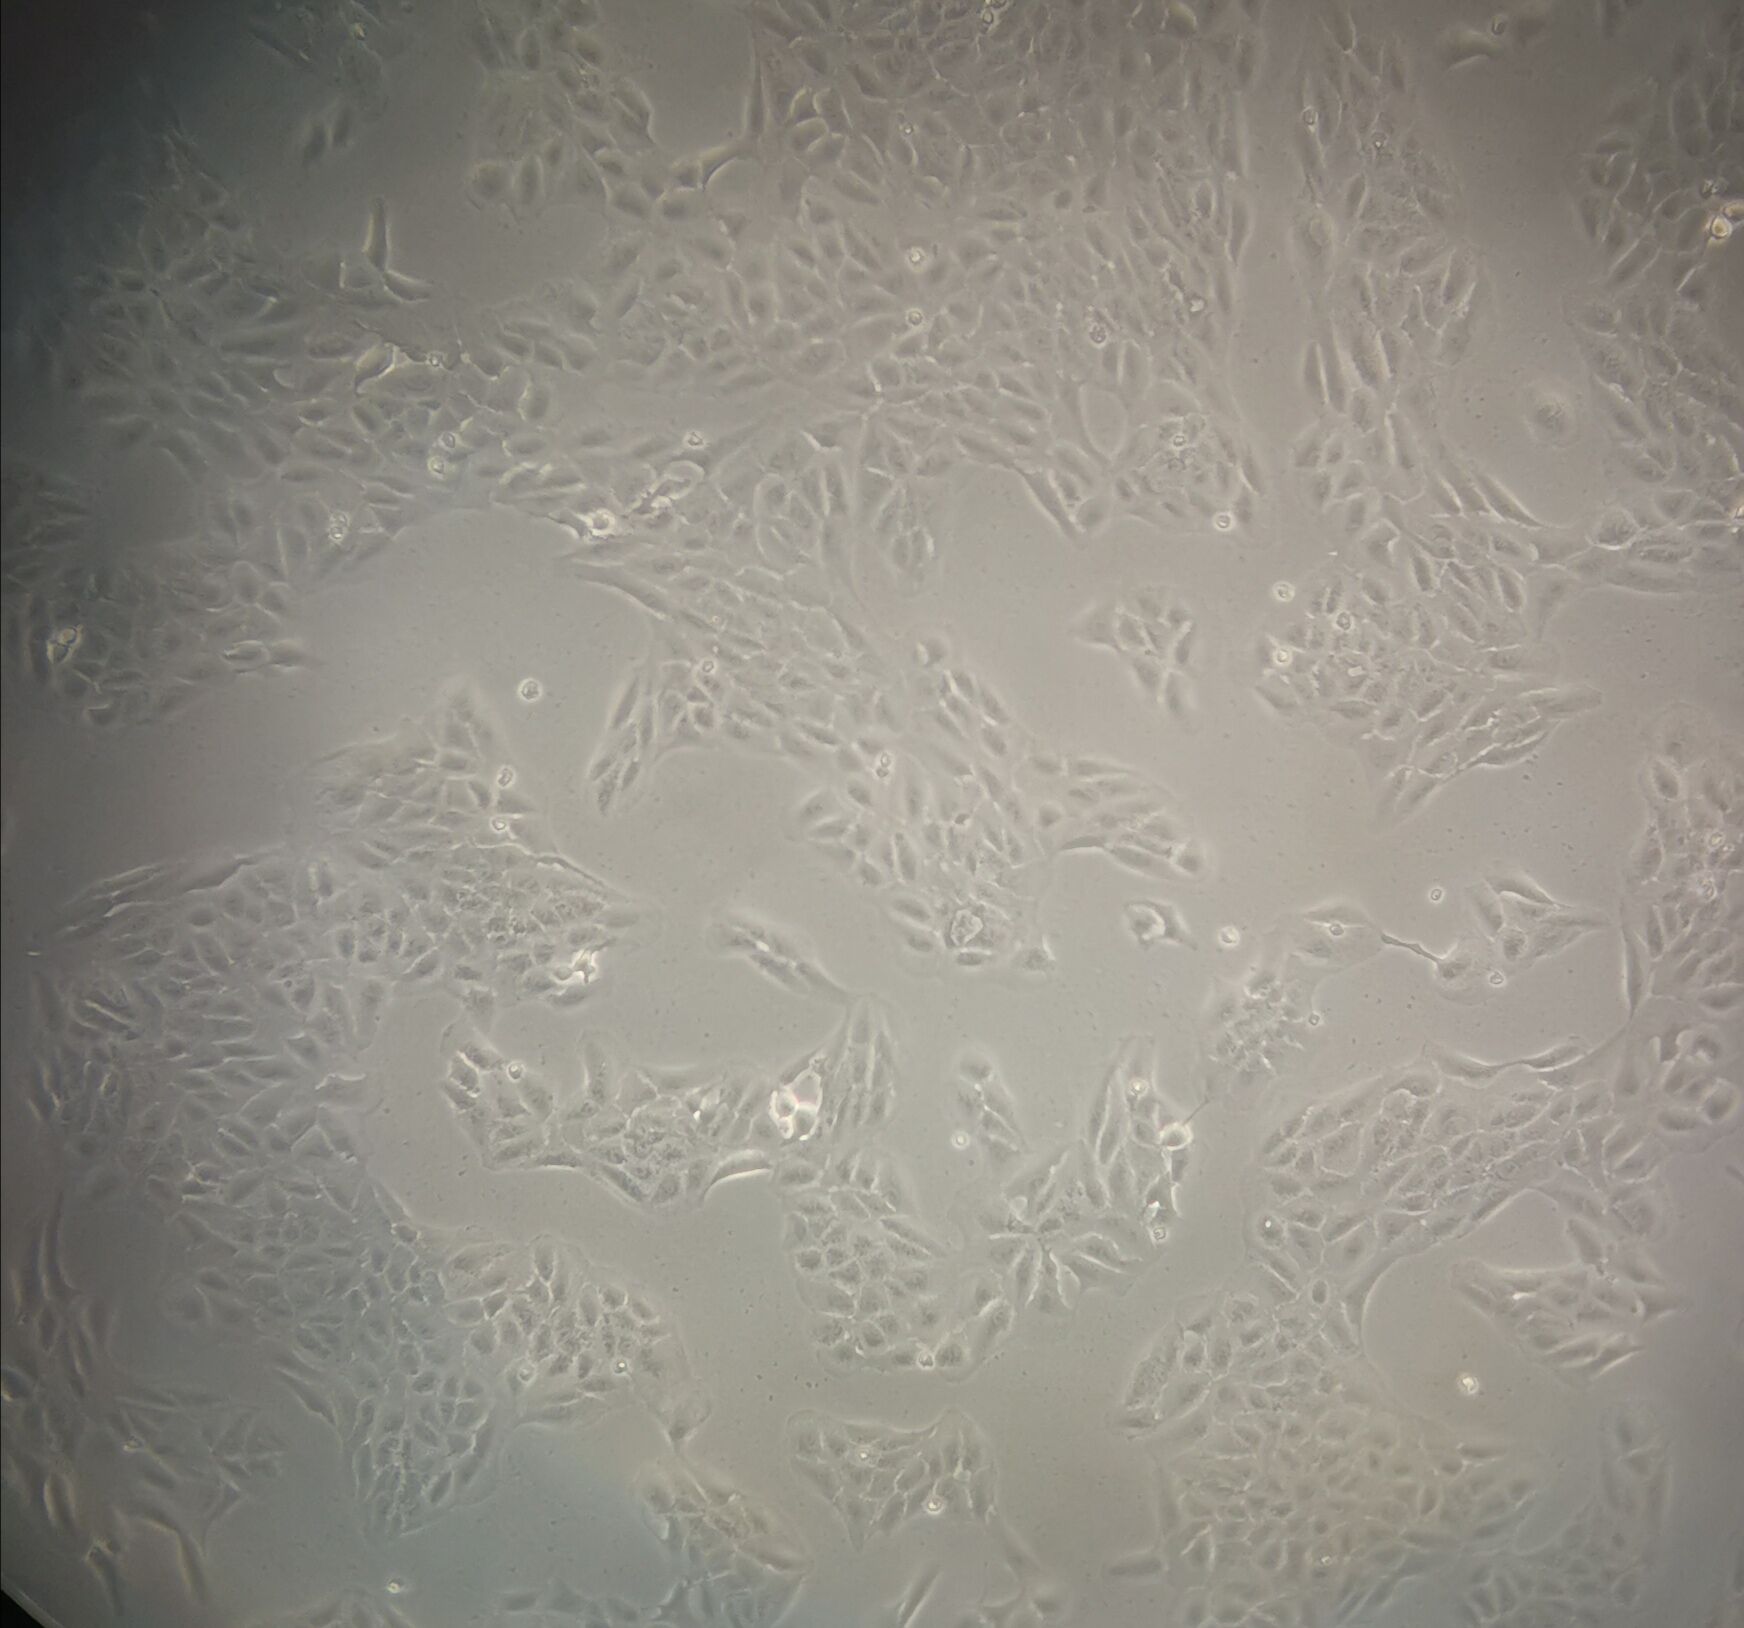 SNU-620 Cells|人胃癌克隆细胞